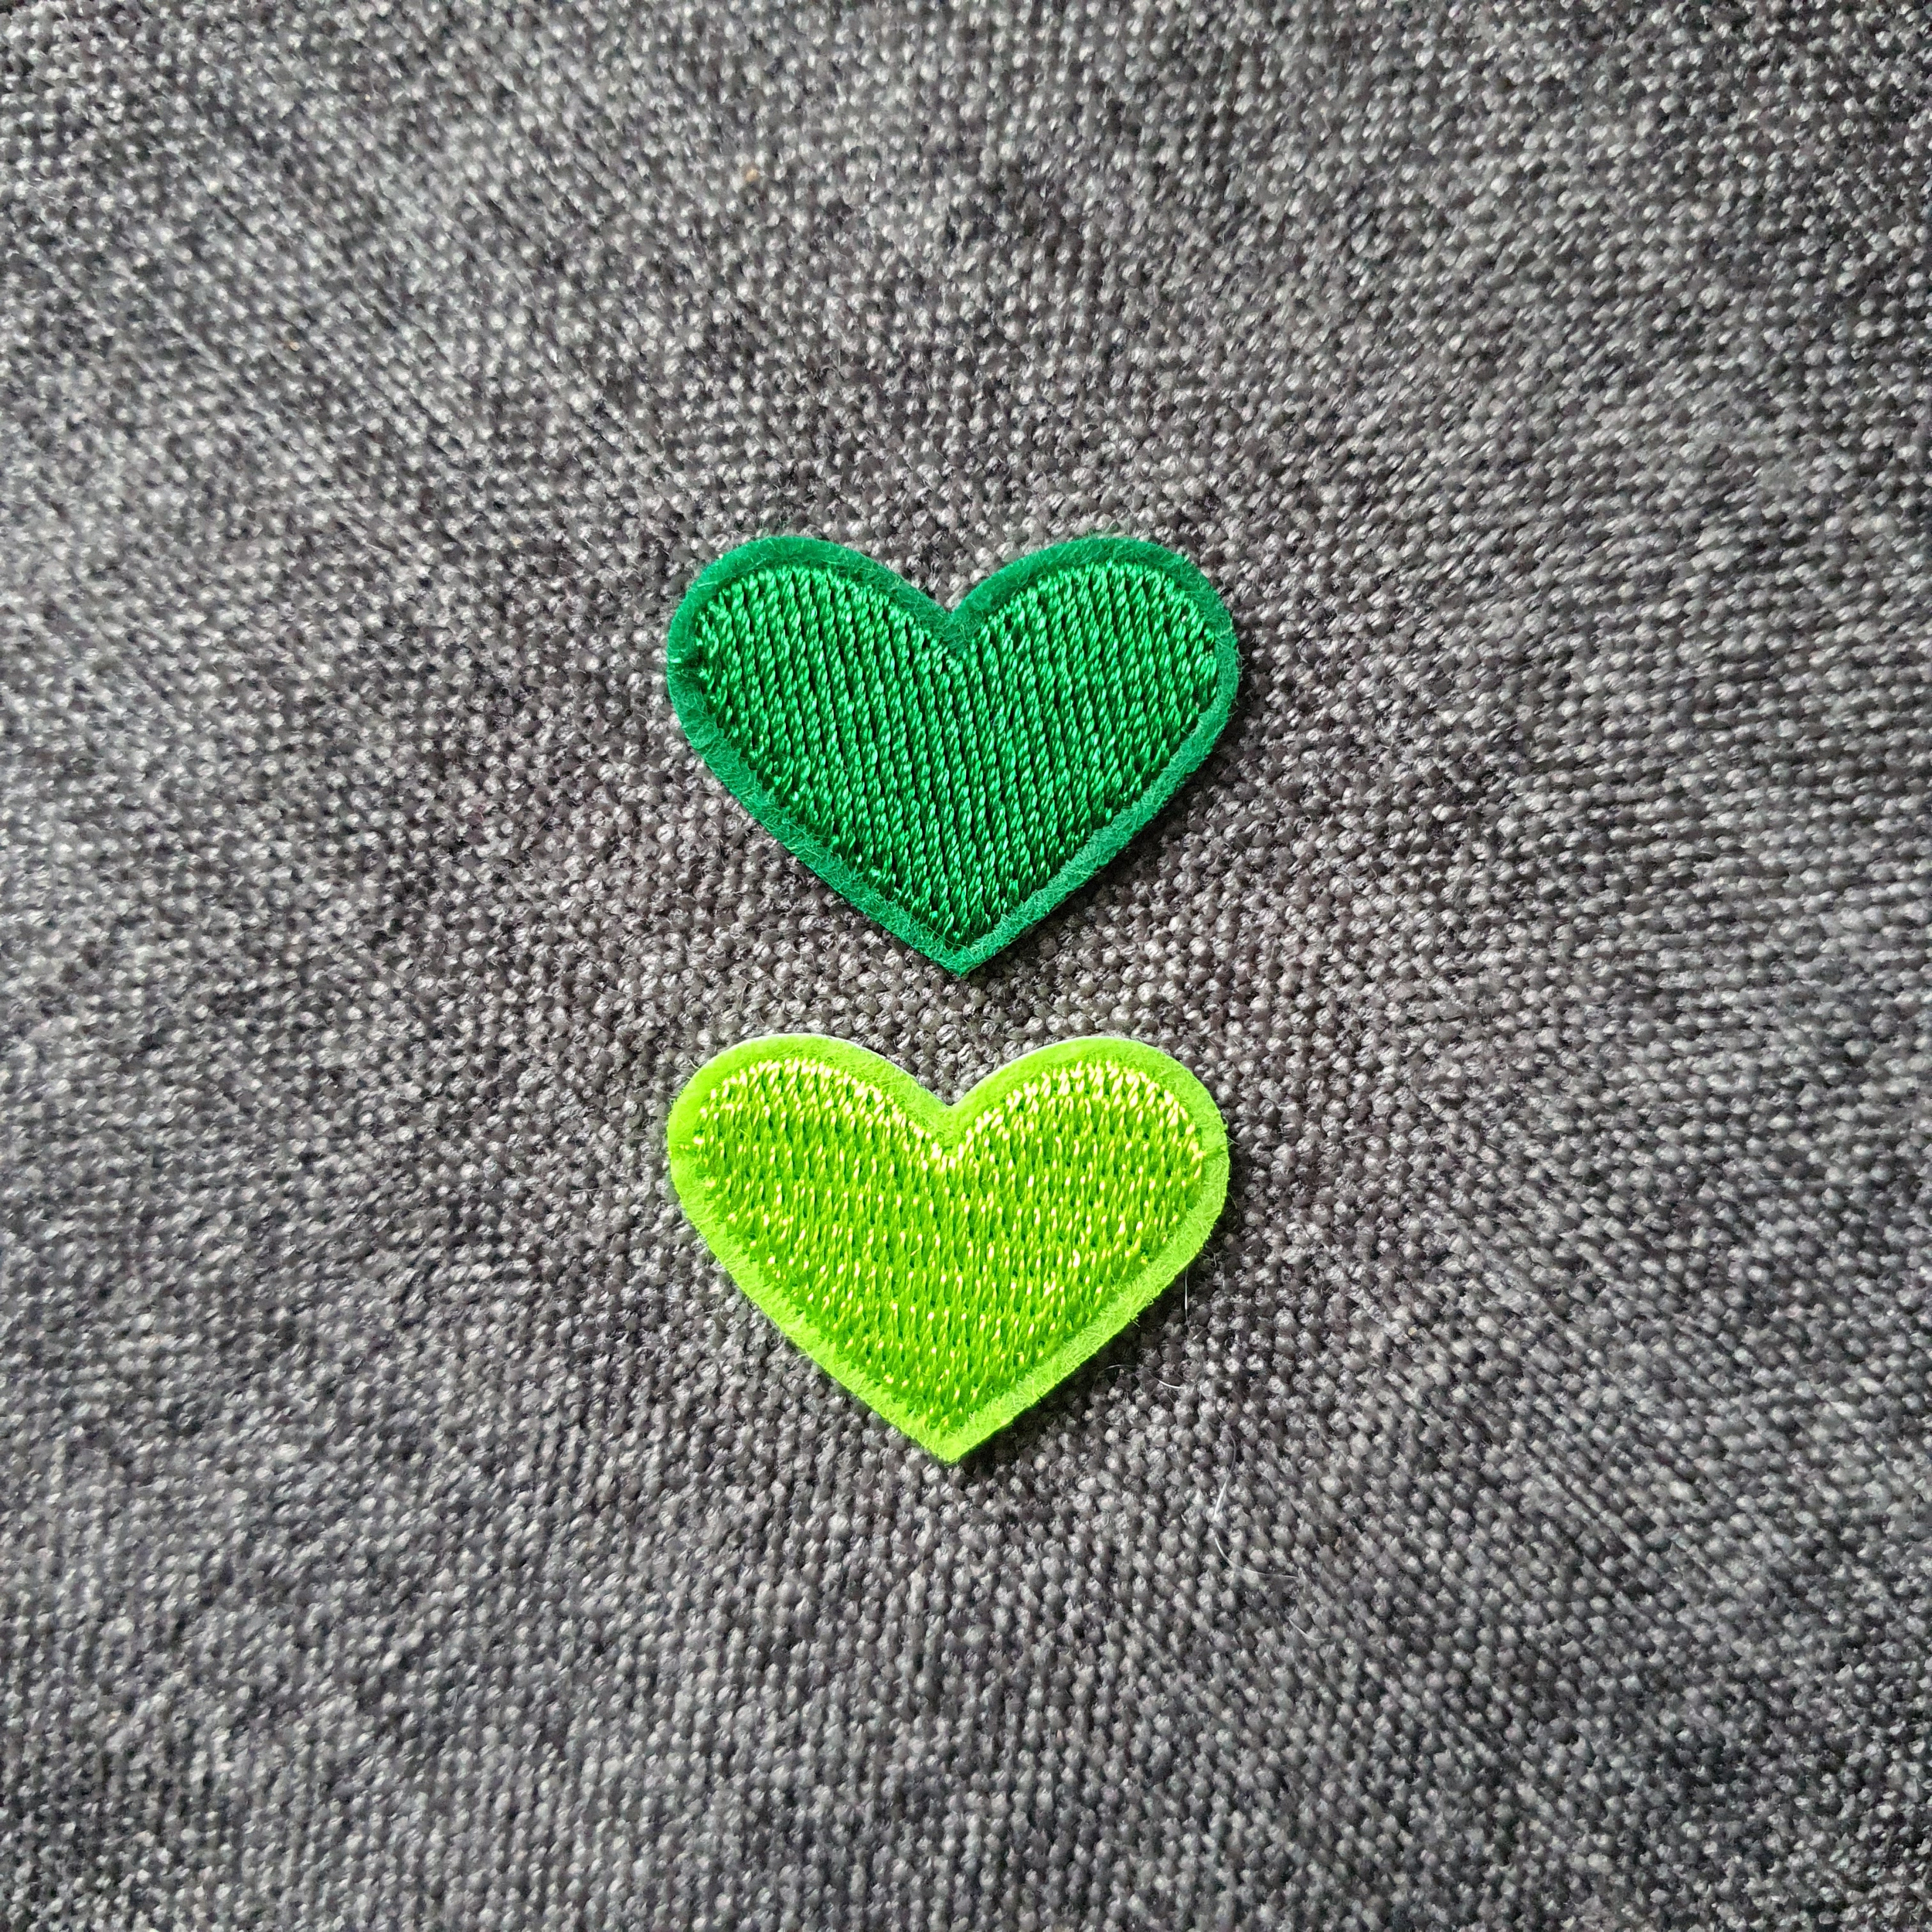 Patch thermocollant duo de petits cœurs colorés vert